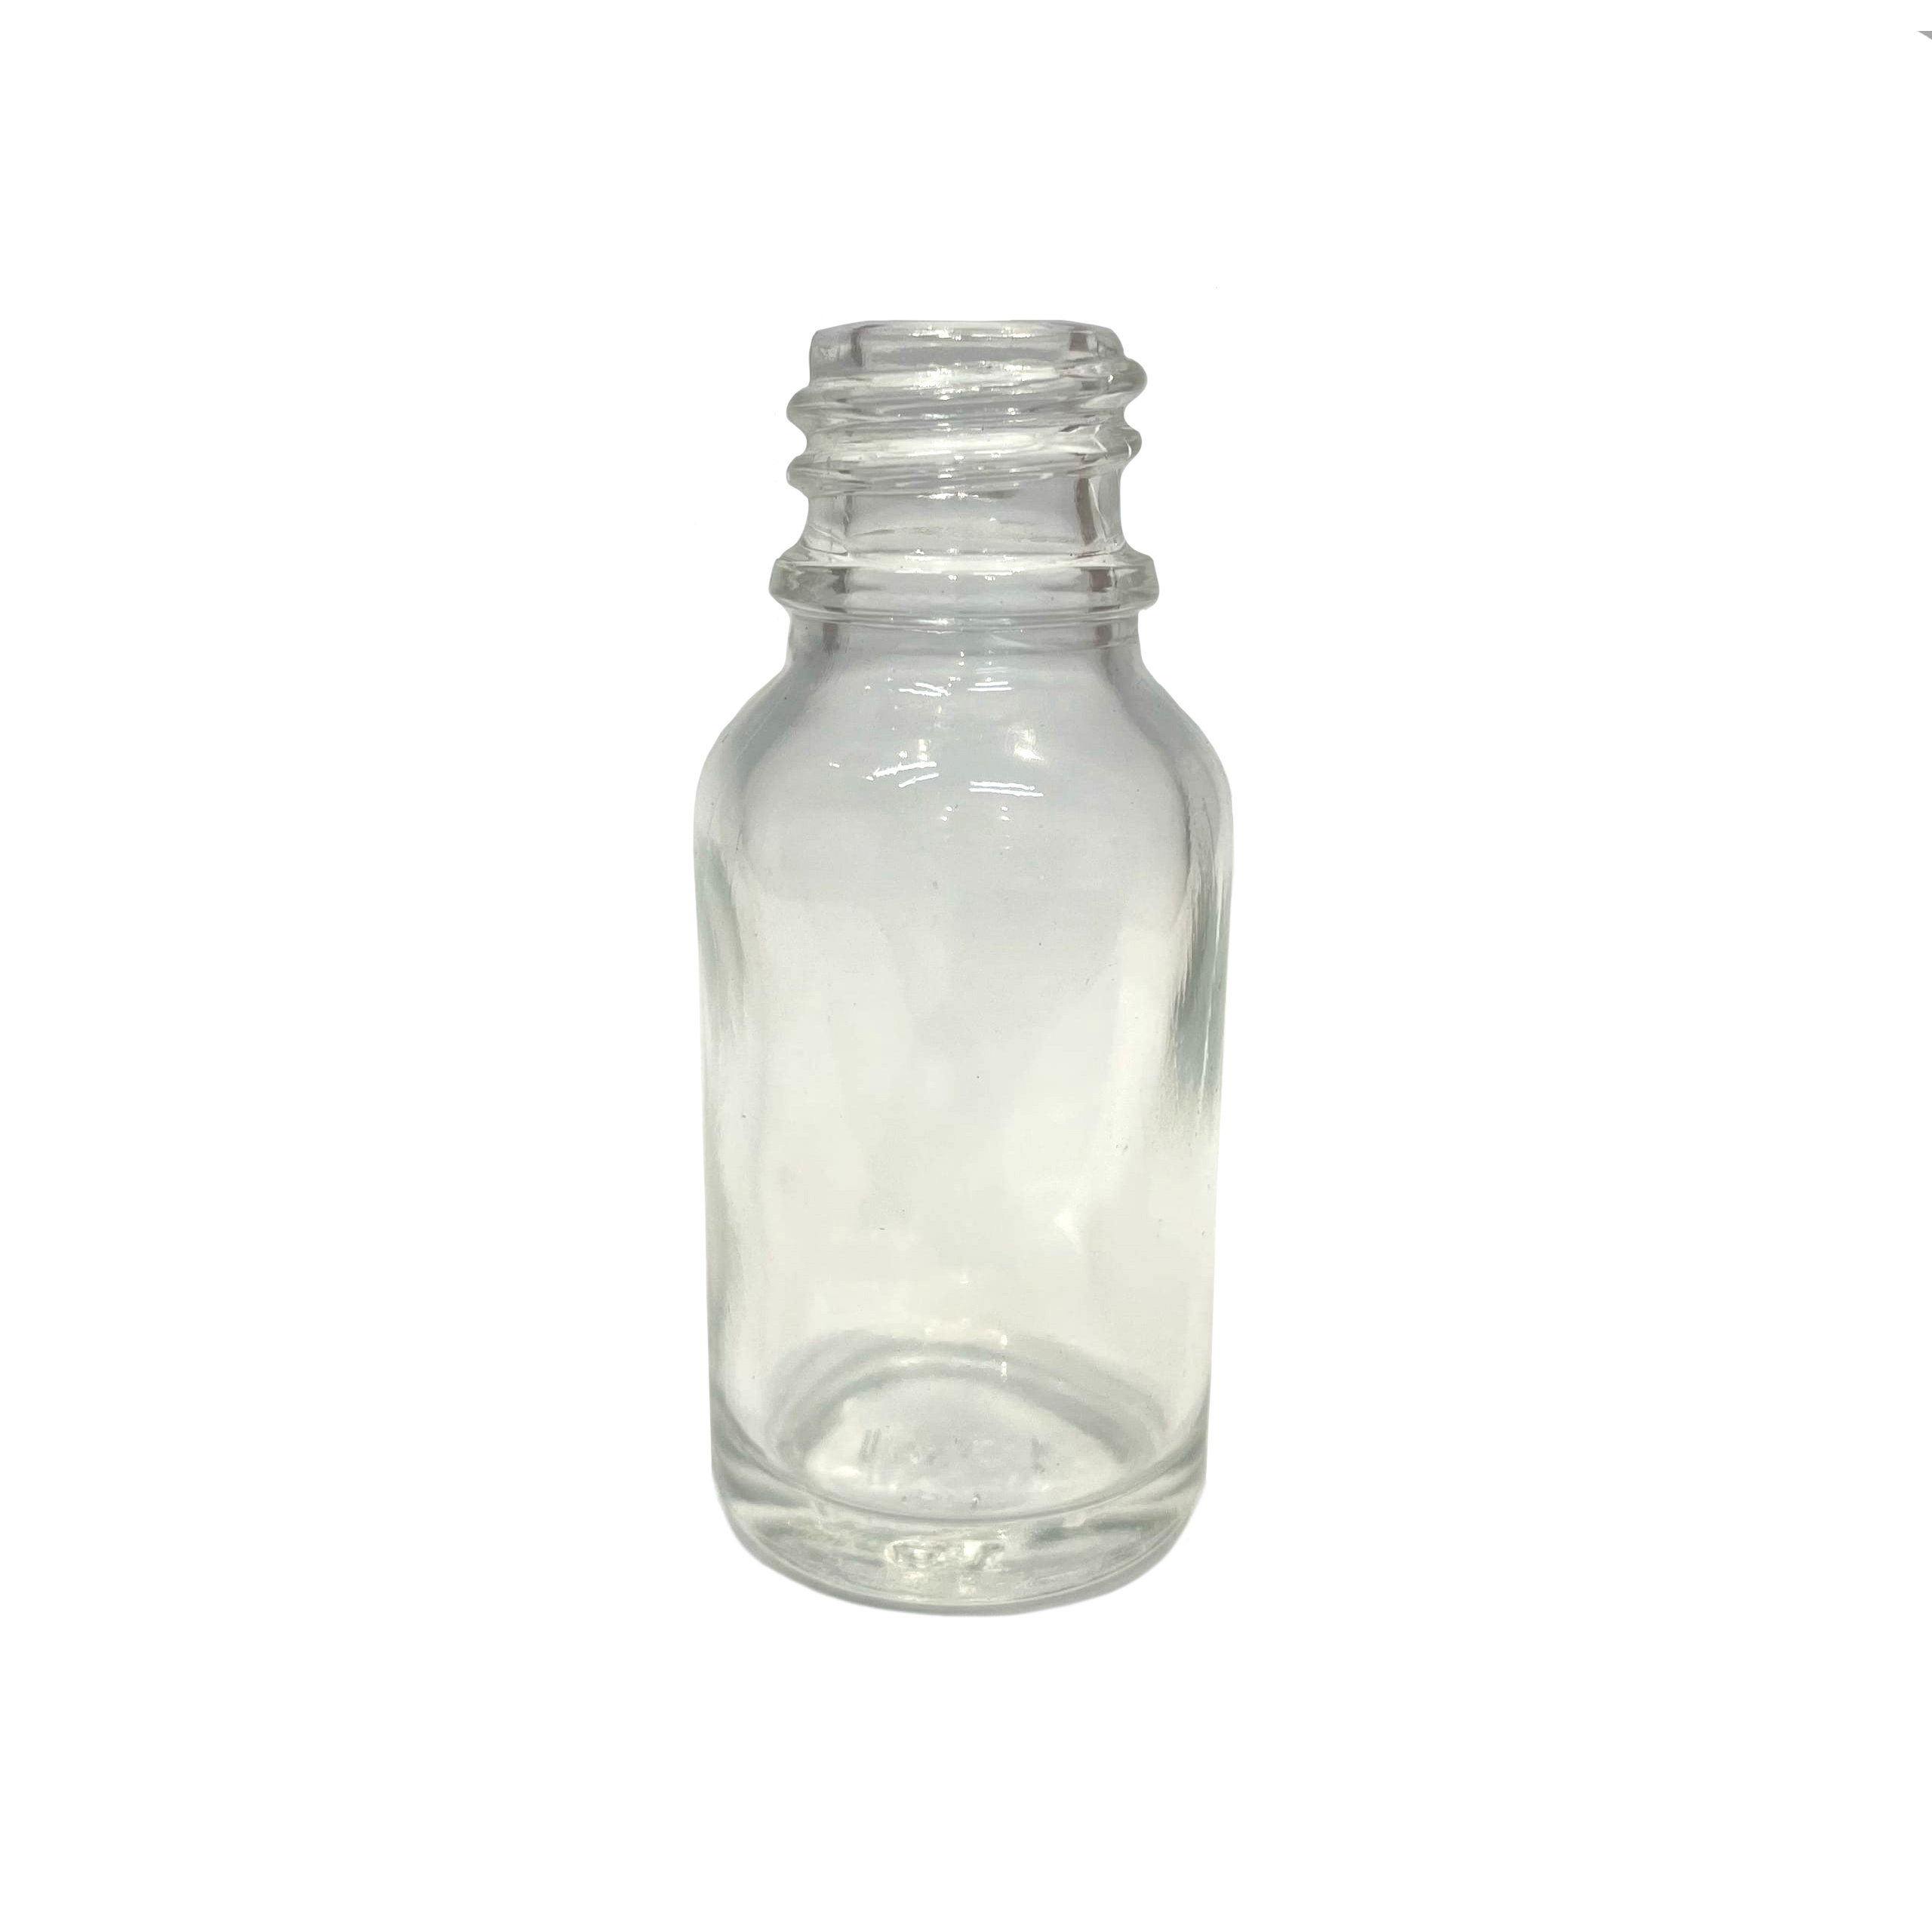 22-006 Imodelist Glass bottle, 15 ml